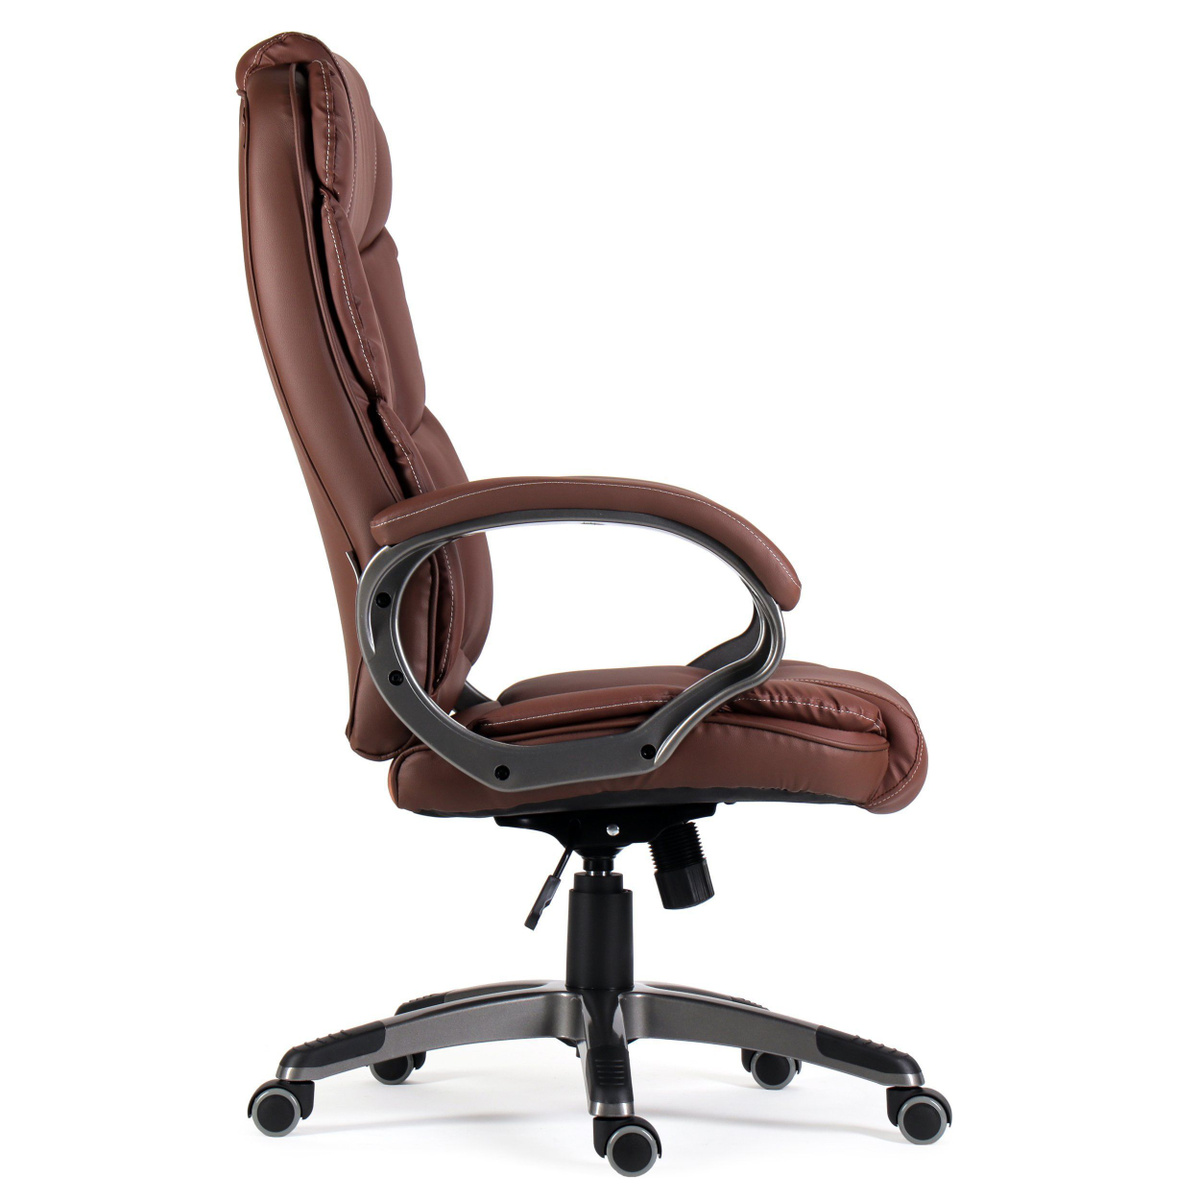 Кресло; игровое кресло; компьютерное кресло; компьютерный стул; офисное кресло на колесах; кресла компьютерные; компьютерные кресла; rhtckj компьютерное; бюрократ; стулья компьютерные; кресло компьютерное бюрократ; офисное кресло бюрократ; кресло 